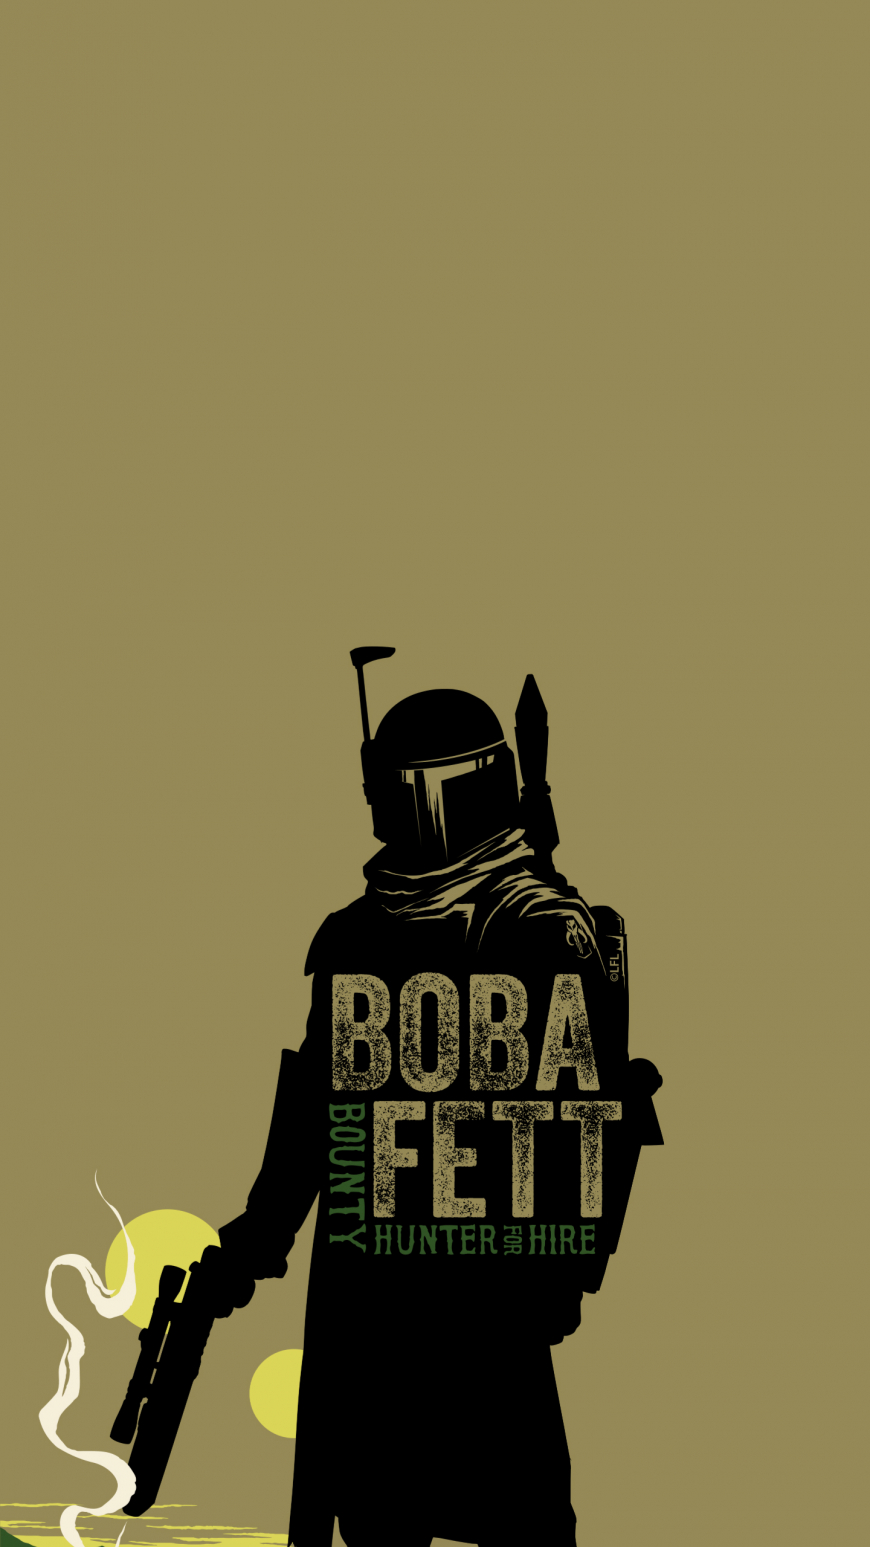 Book of Boba Fett mobile wallpaper